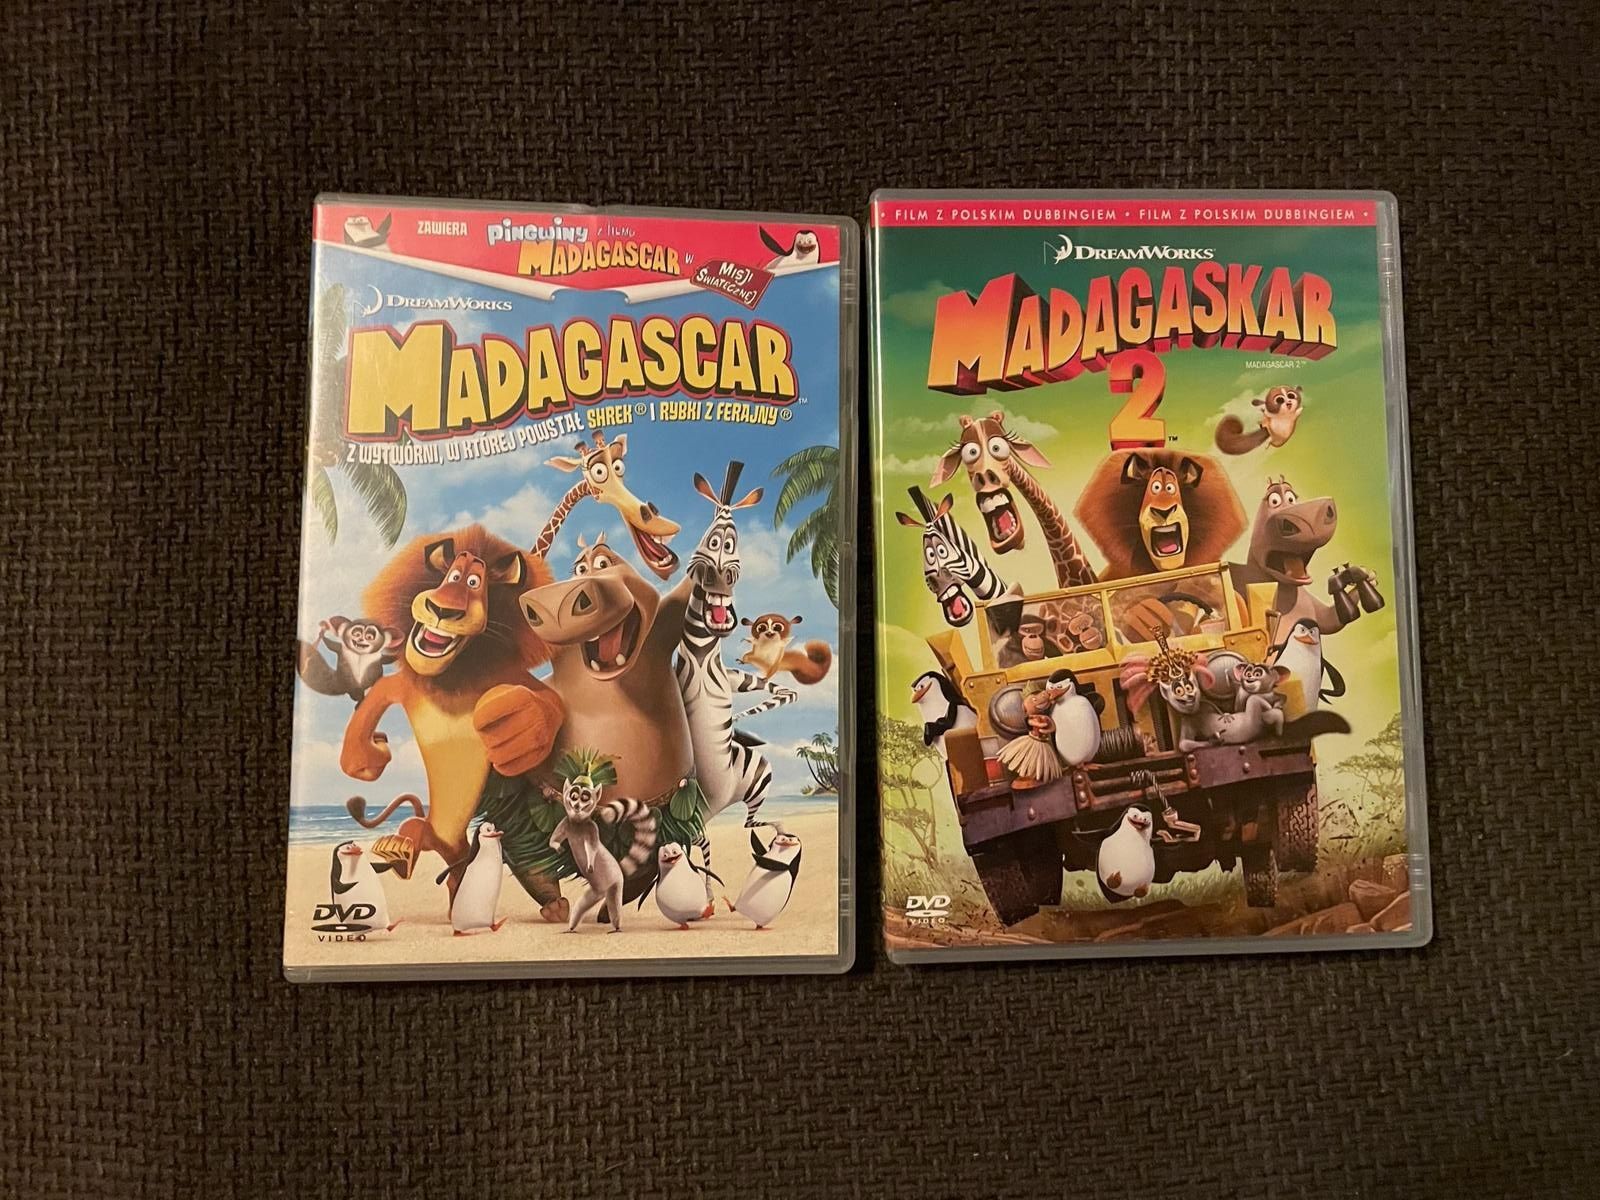 Zestaw płyt DVD Madagaskar cz. 1 oraz 2 filmy zestaw